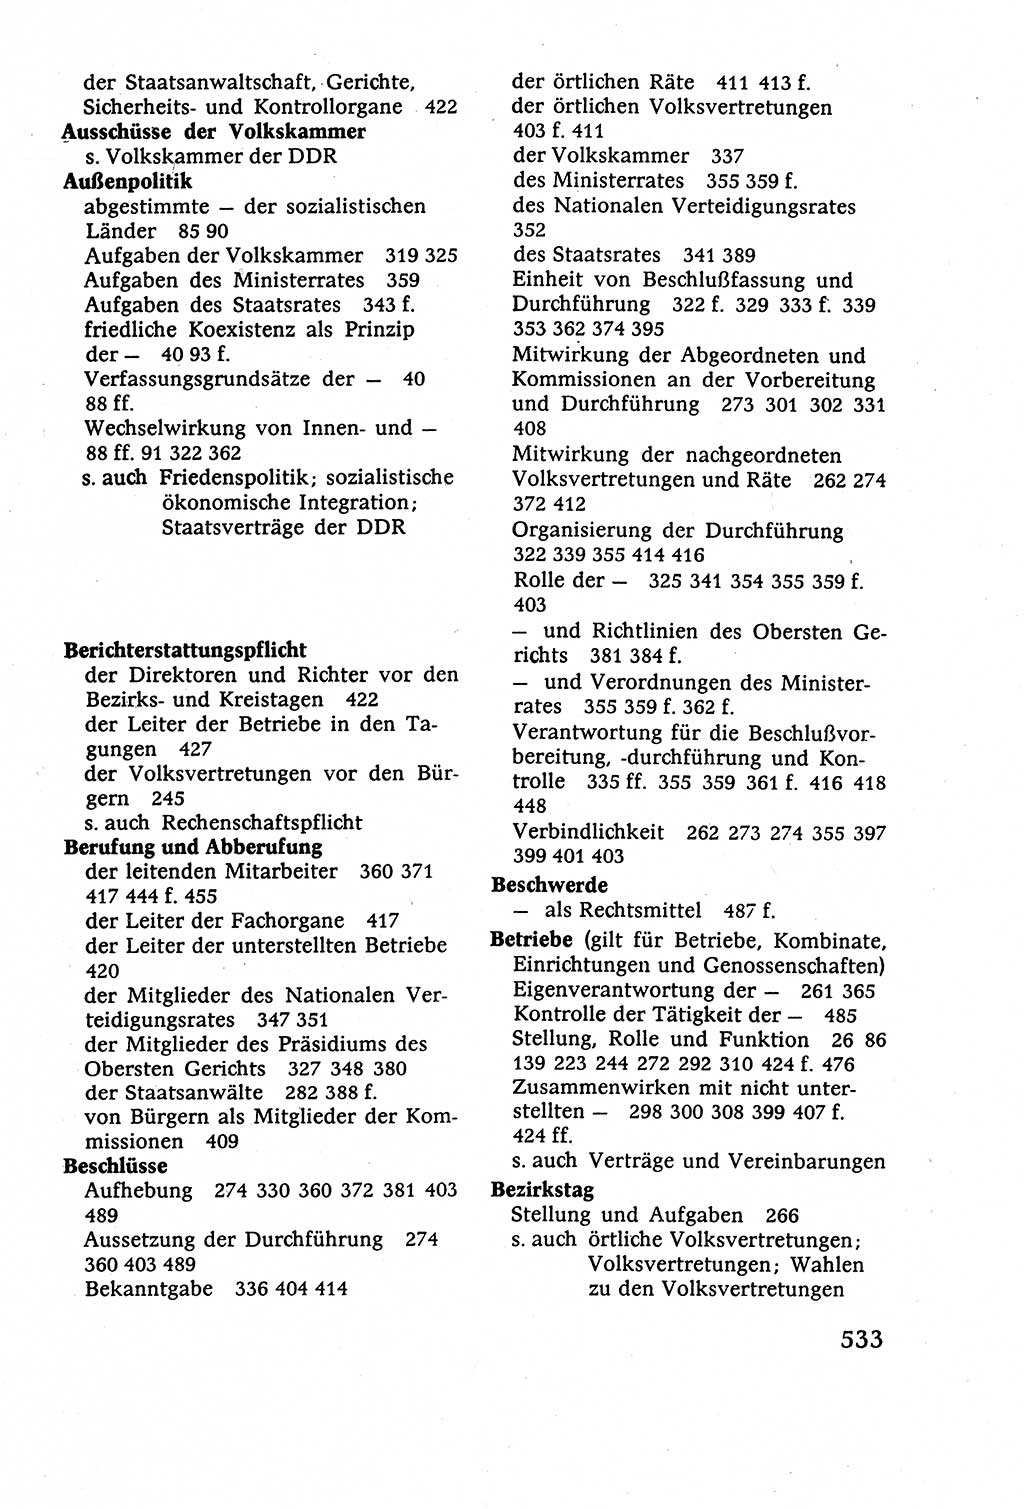 Staatsrecht der DDR (Deutsche Demokratische Republik), Lehrbuch 1977, Seite 533 (St.-R. DDR Lb. 1977, S. 533)